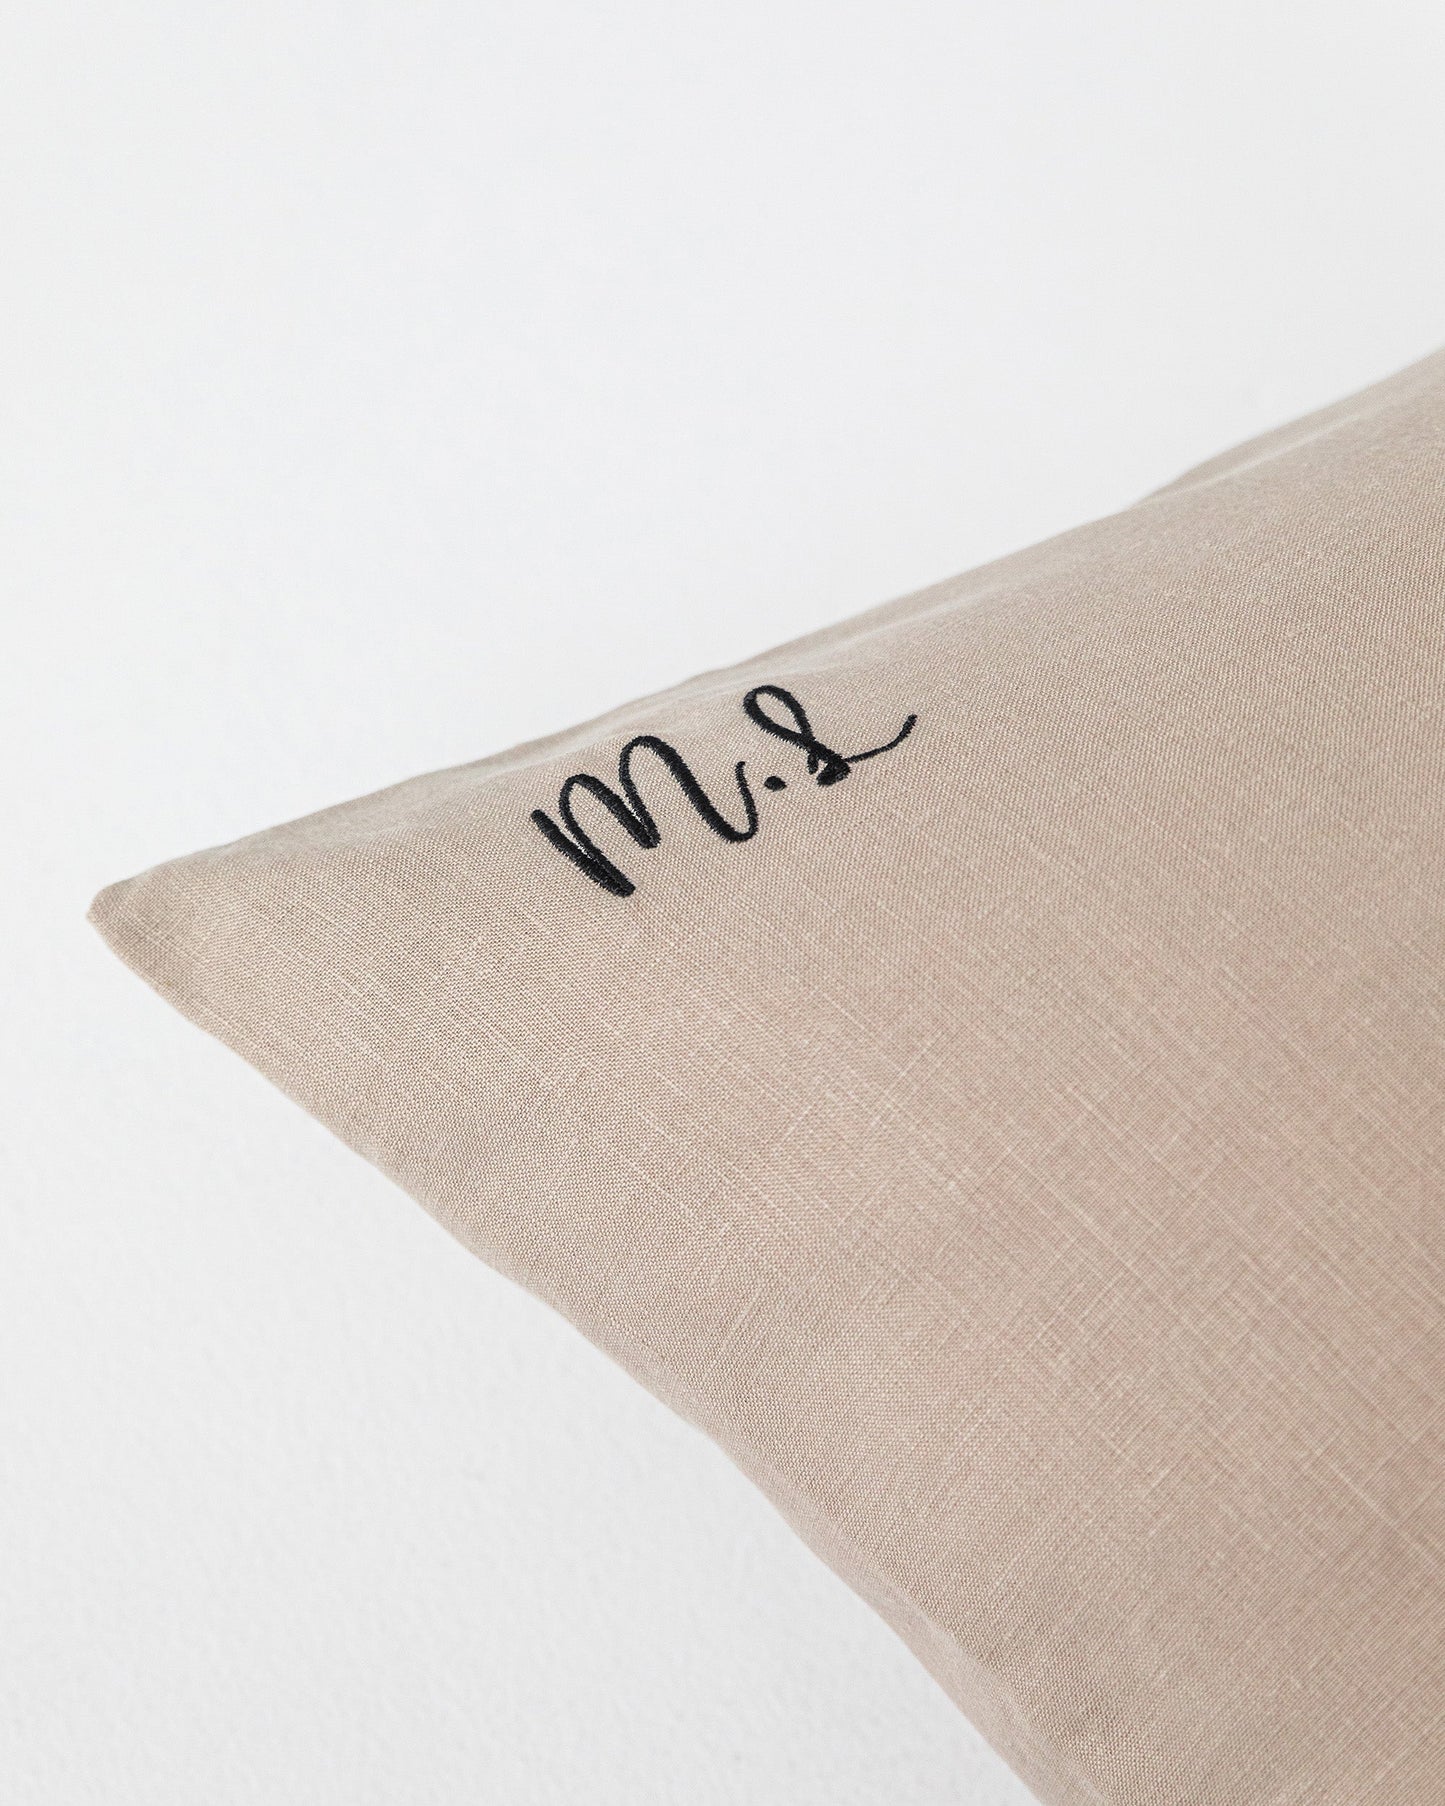 Natural linen pillowcase - MagicLinen